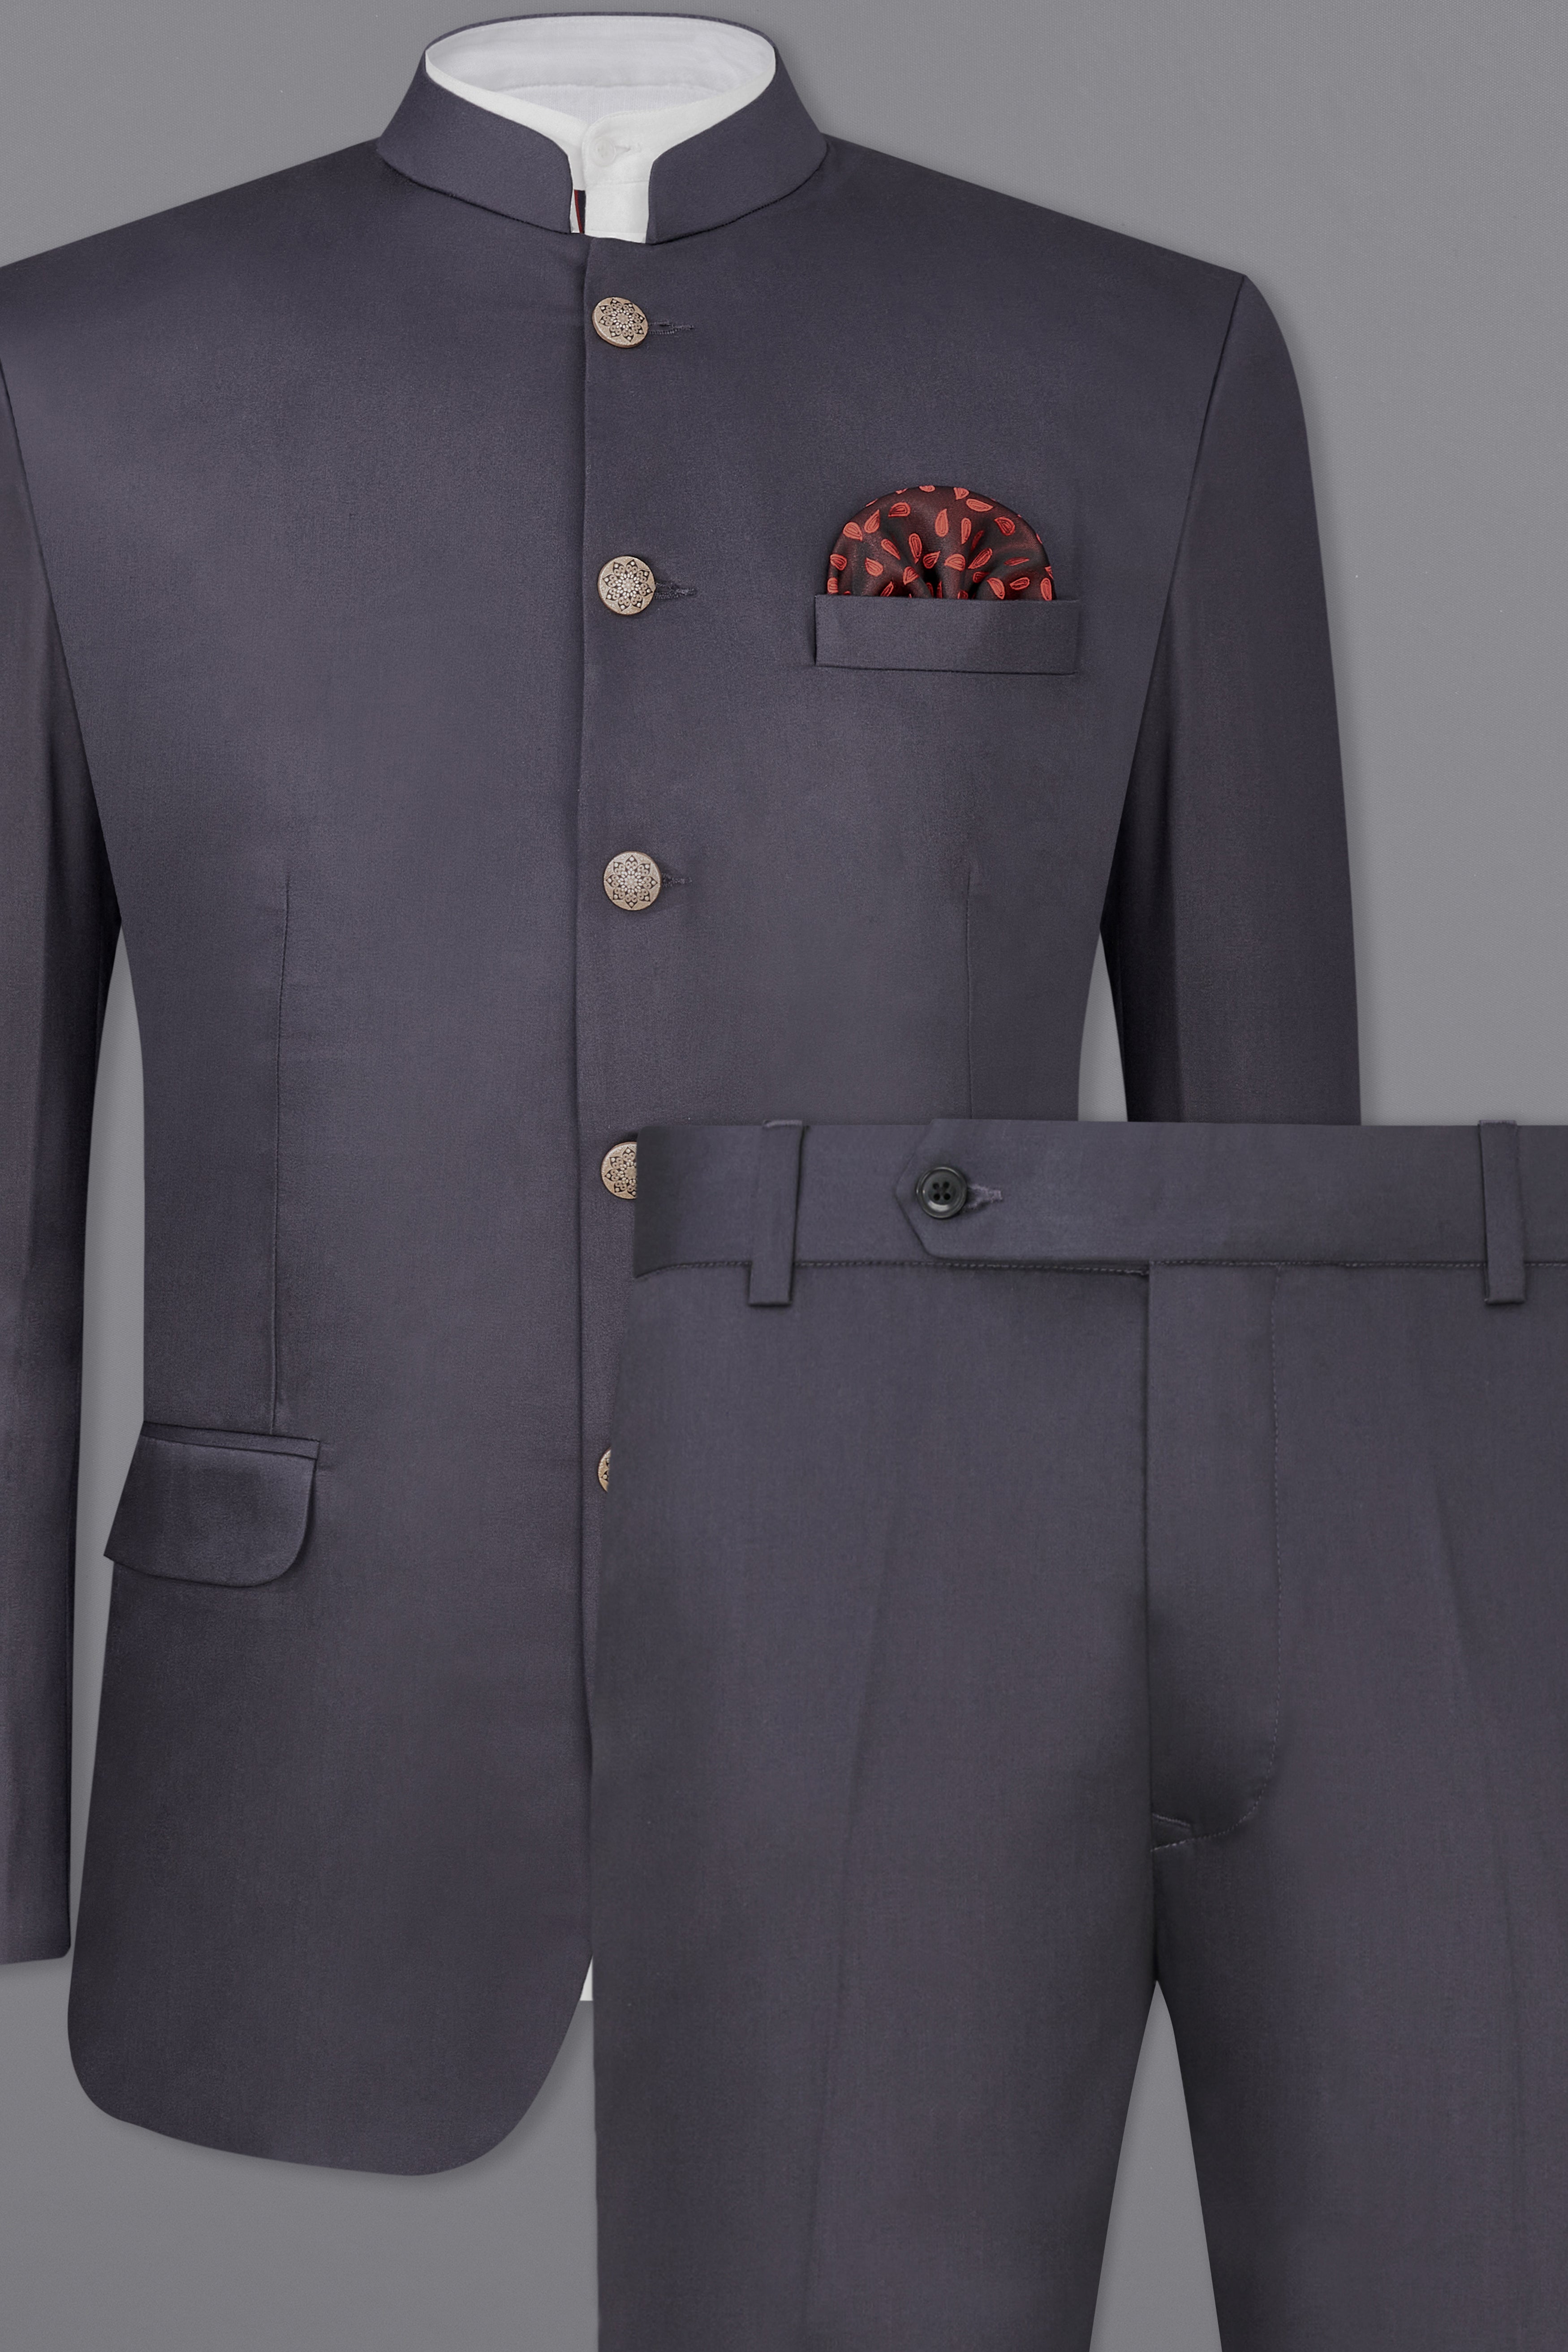 Porpoise Gray Subtle Sheen Bandhgala Suit